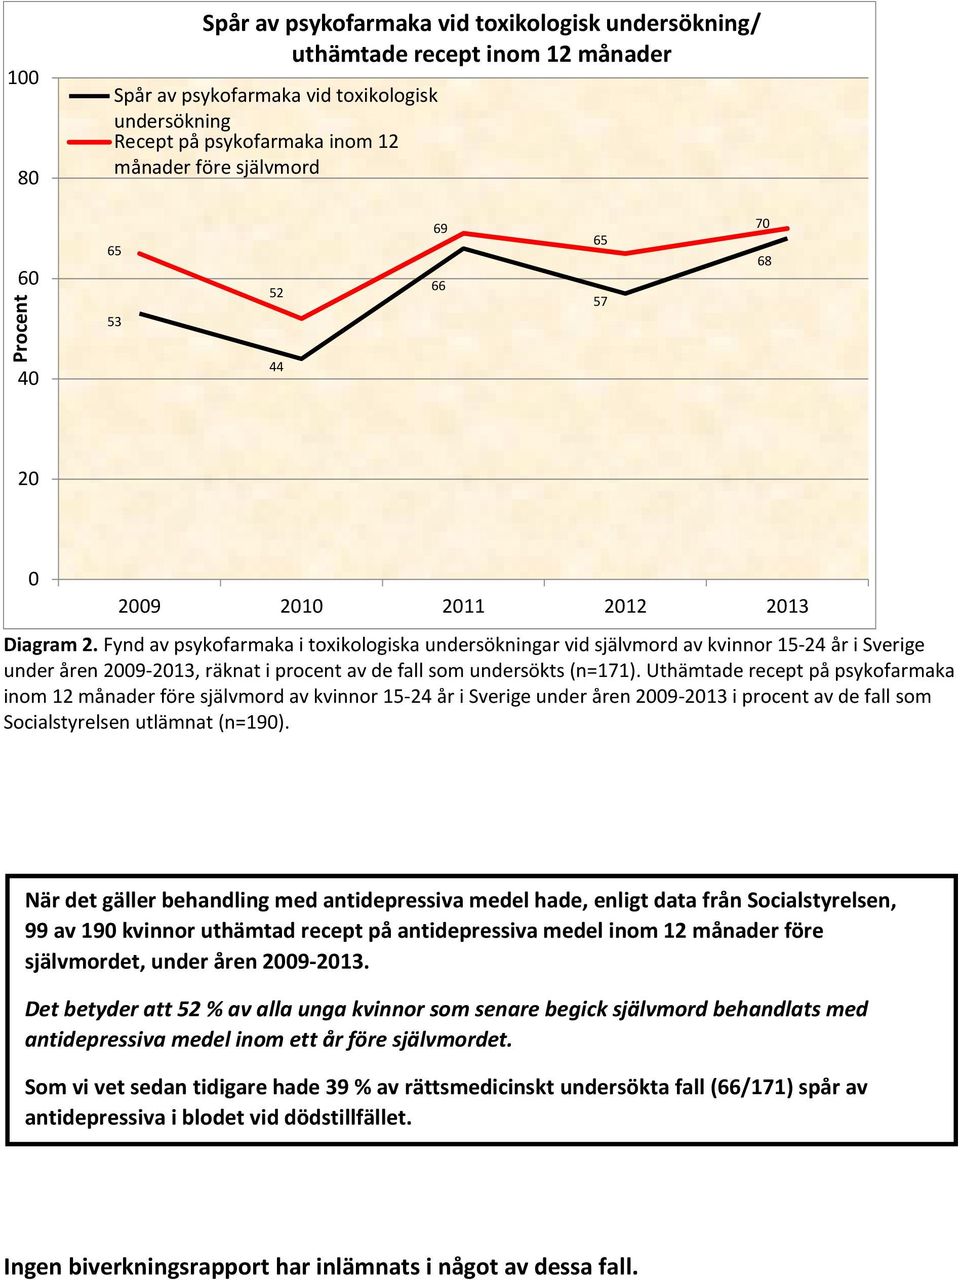 Fynd av psykofarmaka i toxikologiska undersökningar vid självmord av kvinnor 15-24 år i Sverige under åren 2009-2013, räknat i procent av de fall som undersökts (n=171).